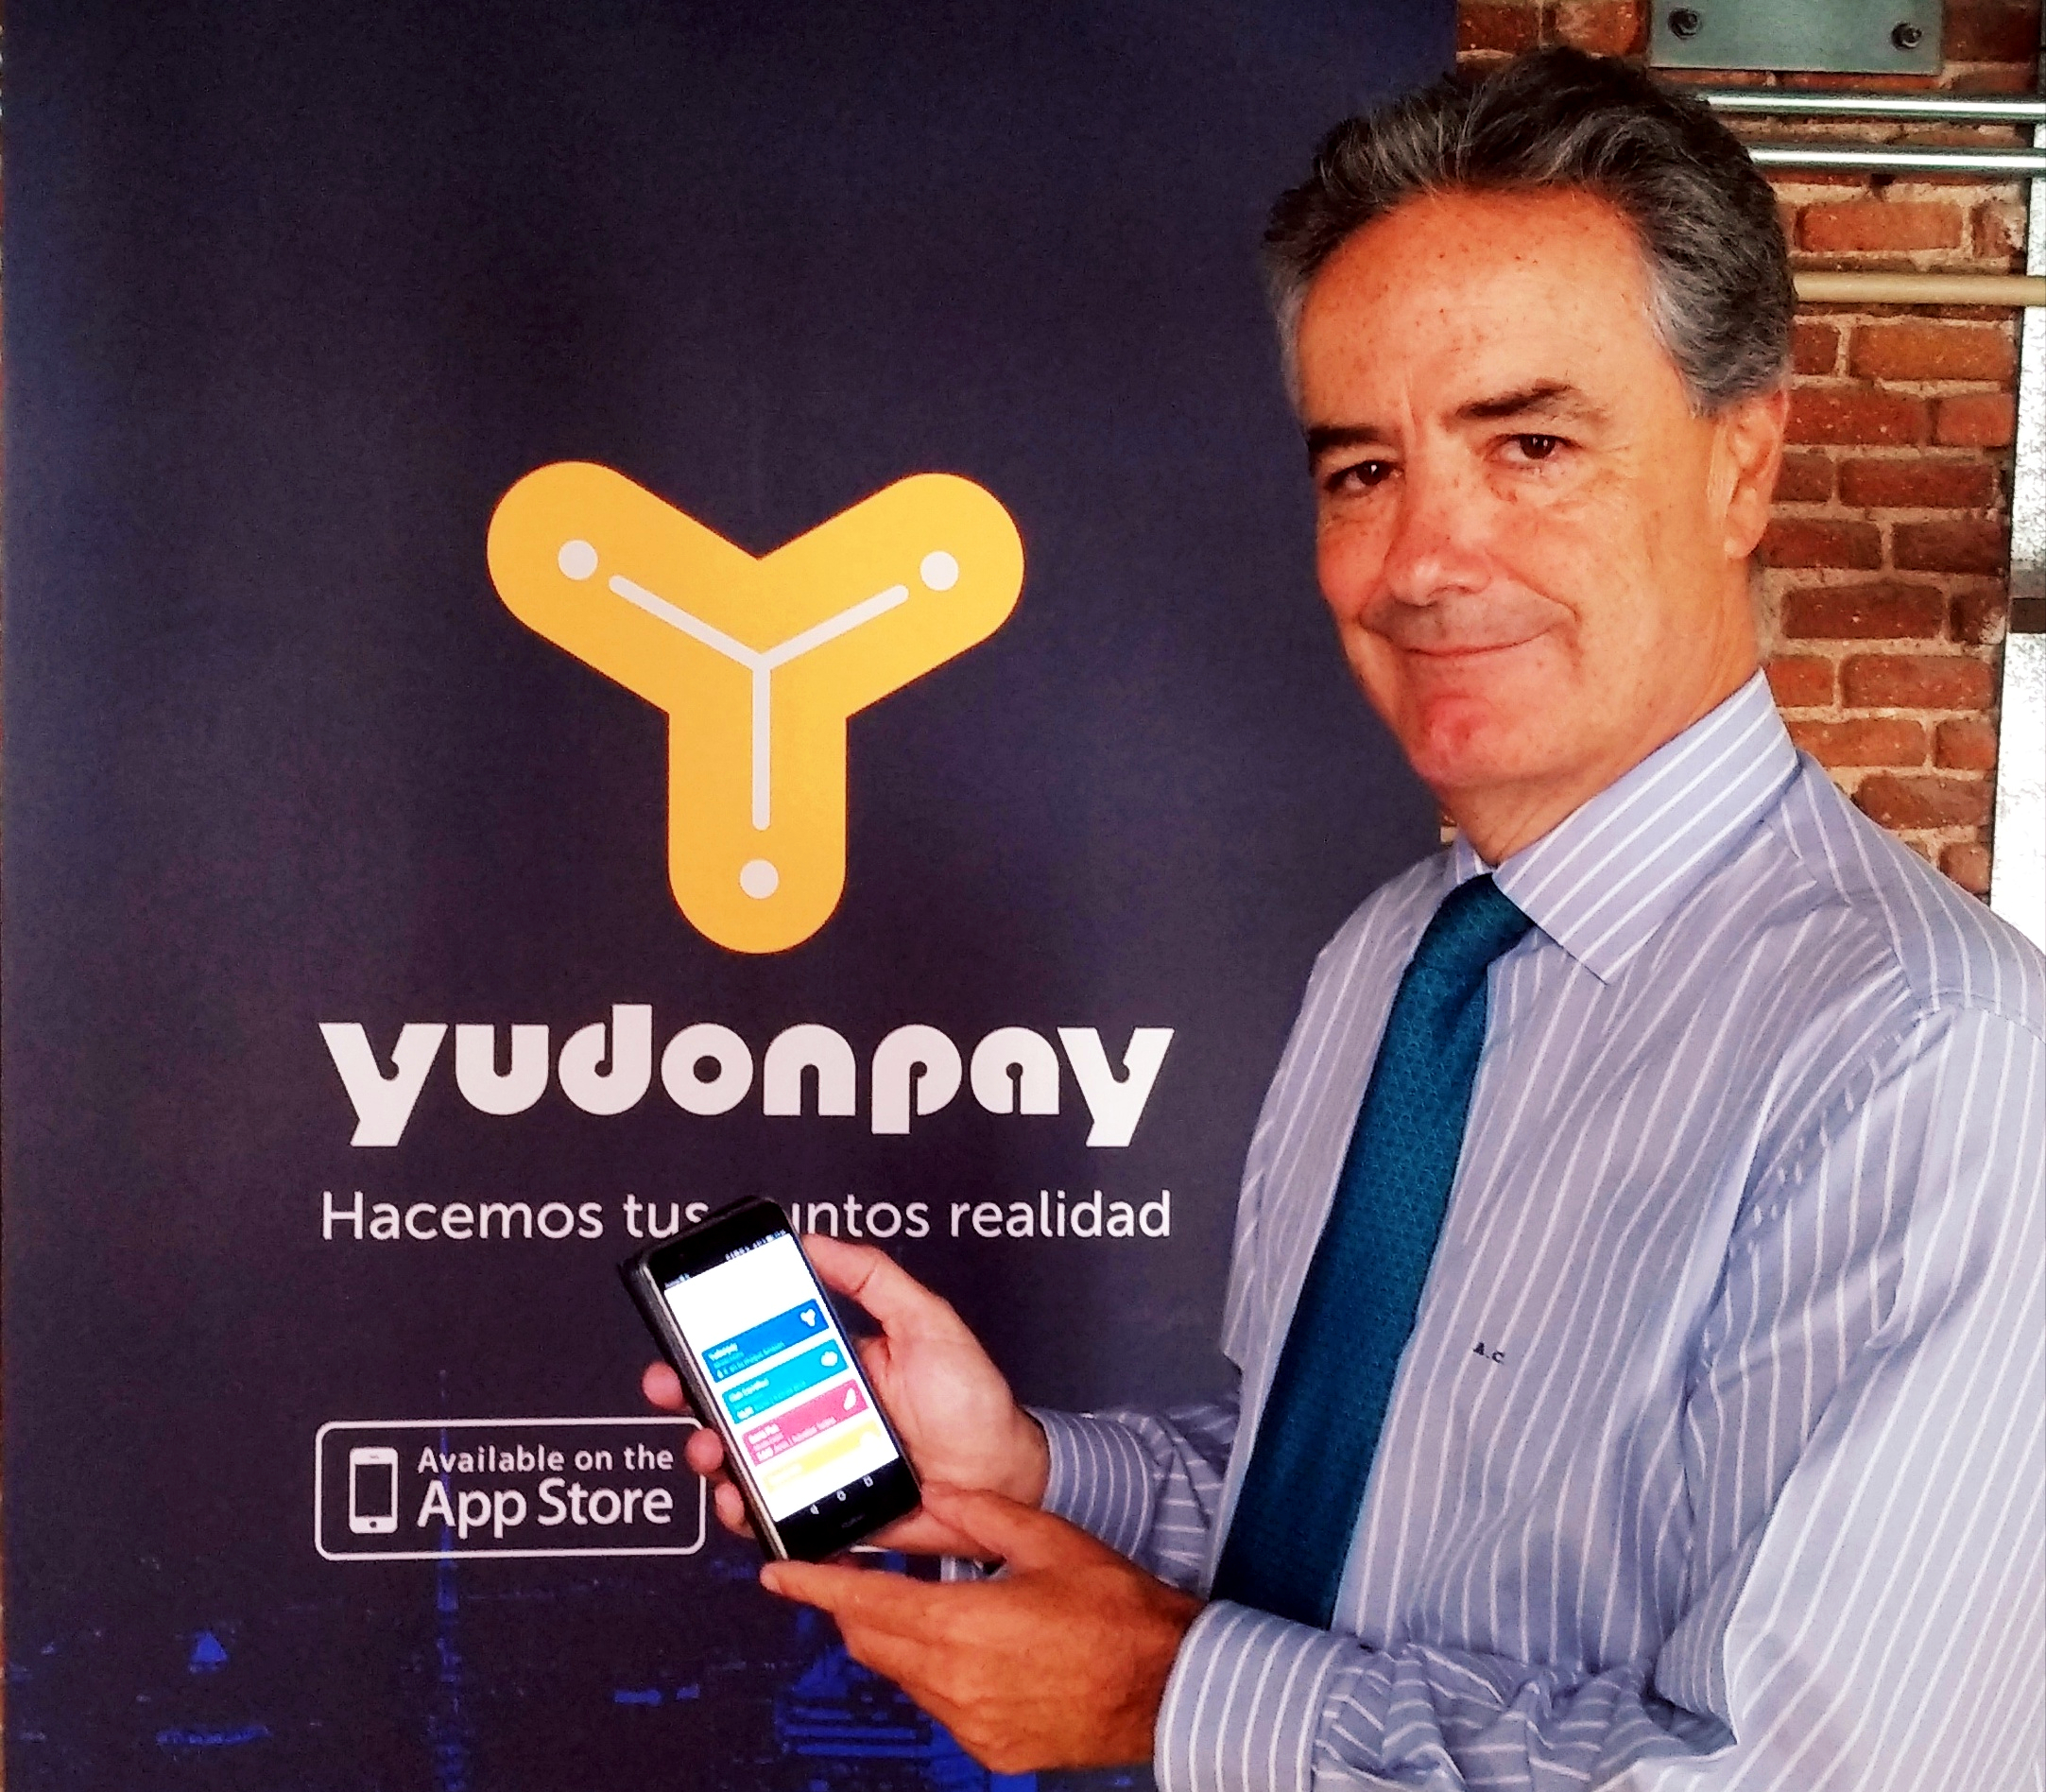 Yudonpay: "Queremos convertirnos en un markeplace de puntos de fidelización"